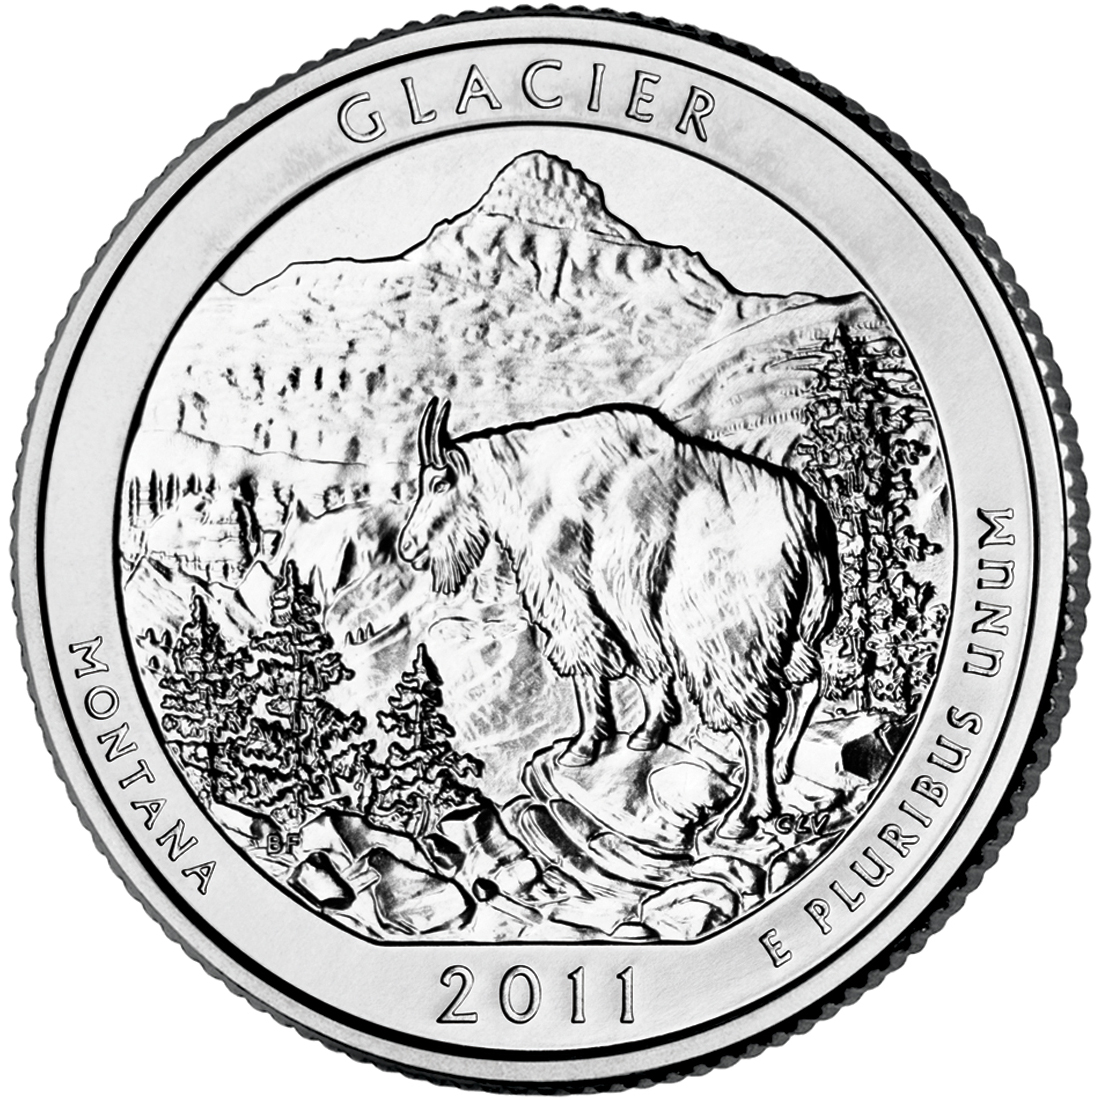 2011 Glacier National Park